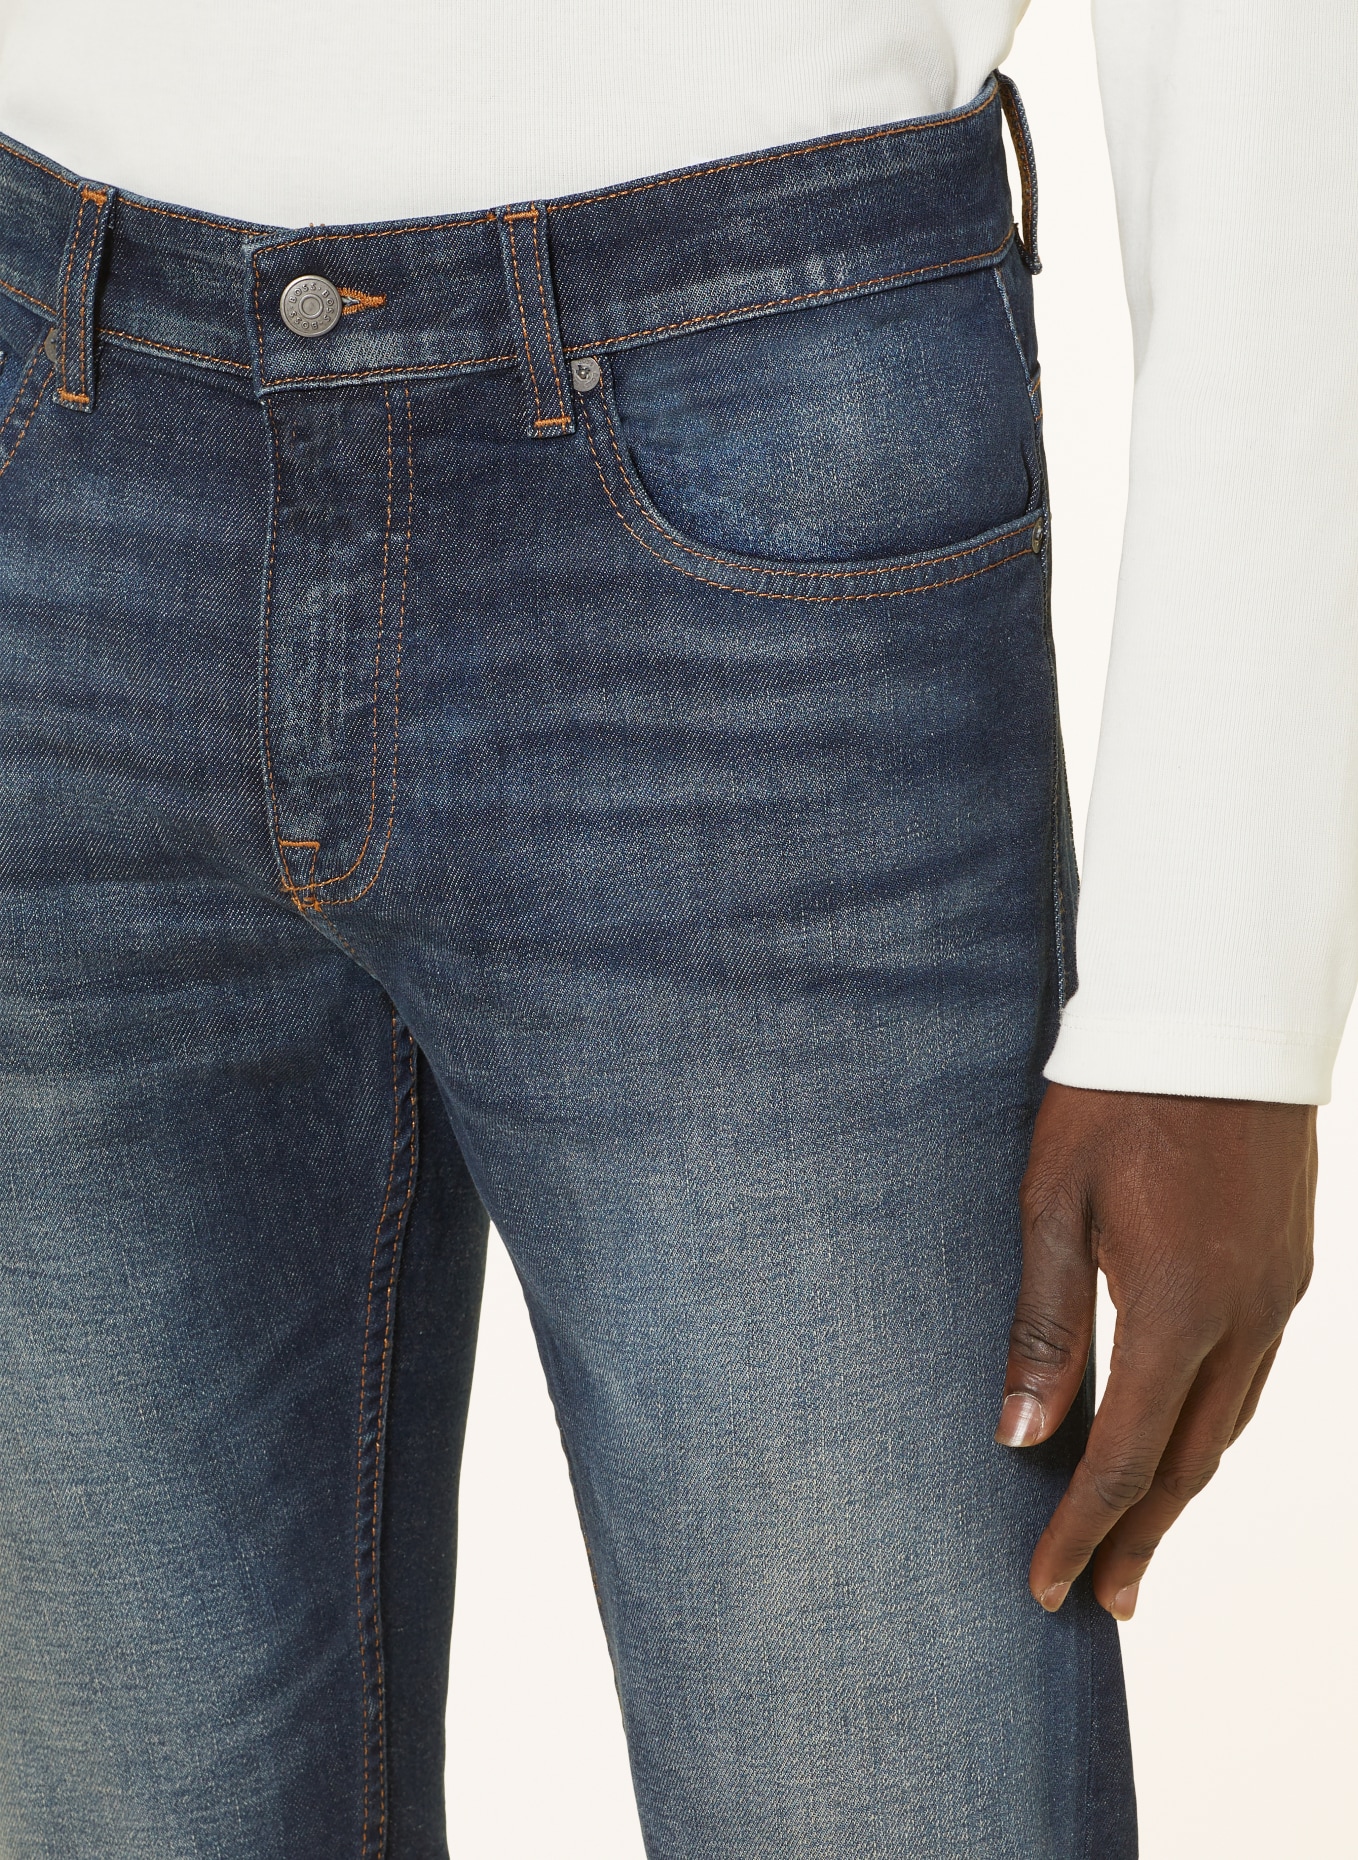 BOSS Jeans DELAWARE Slim Fit, Farbe: 412 NAVY (Bild 5)